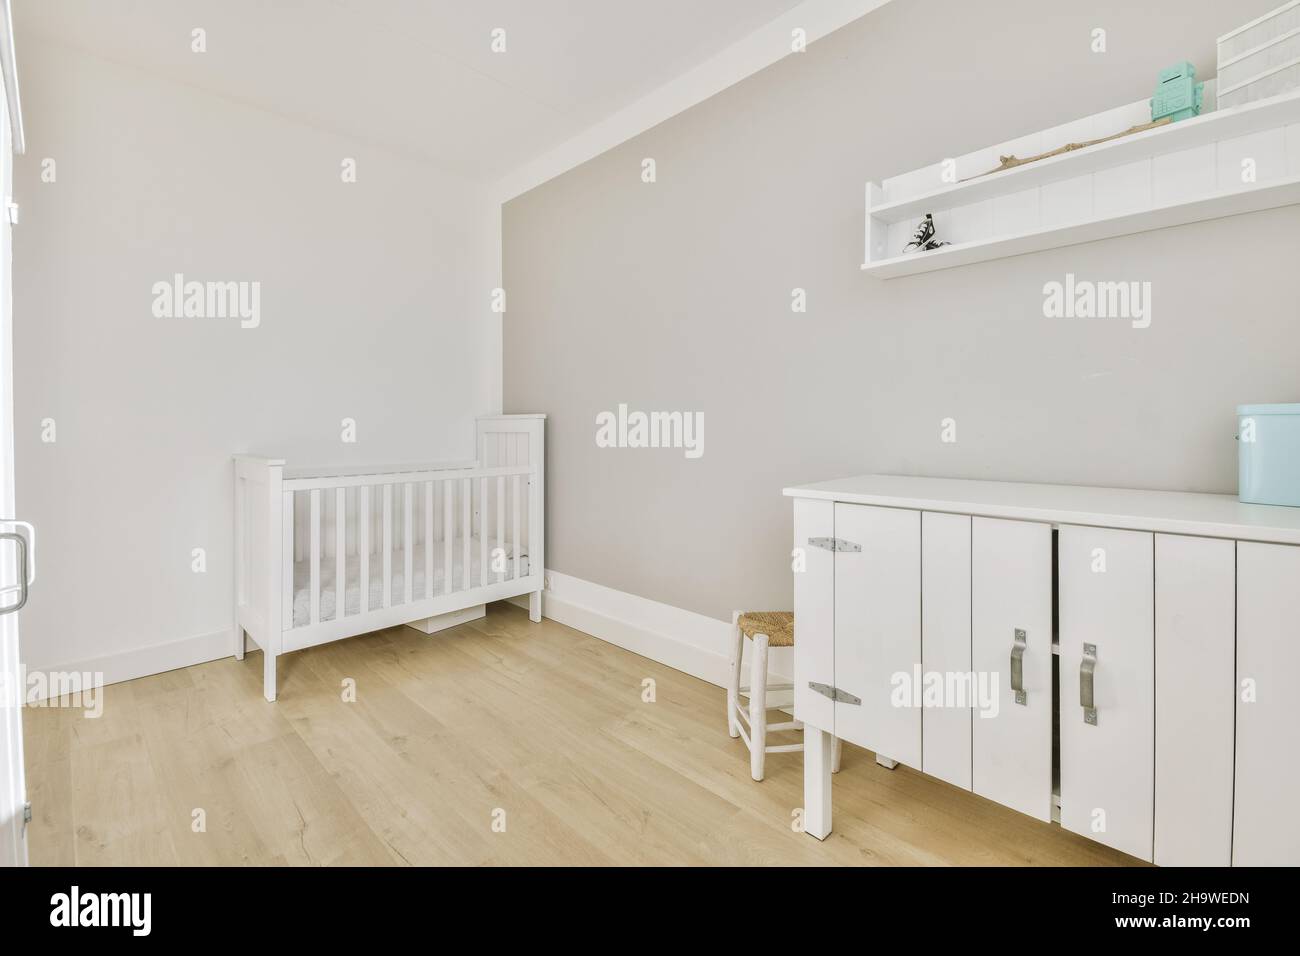 Intérieur de la chambre d'enfant avec murs blancs Banque D'Images